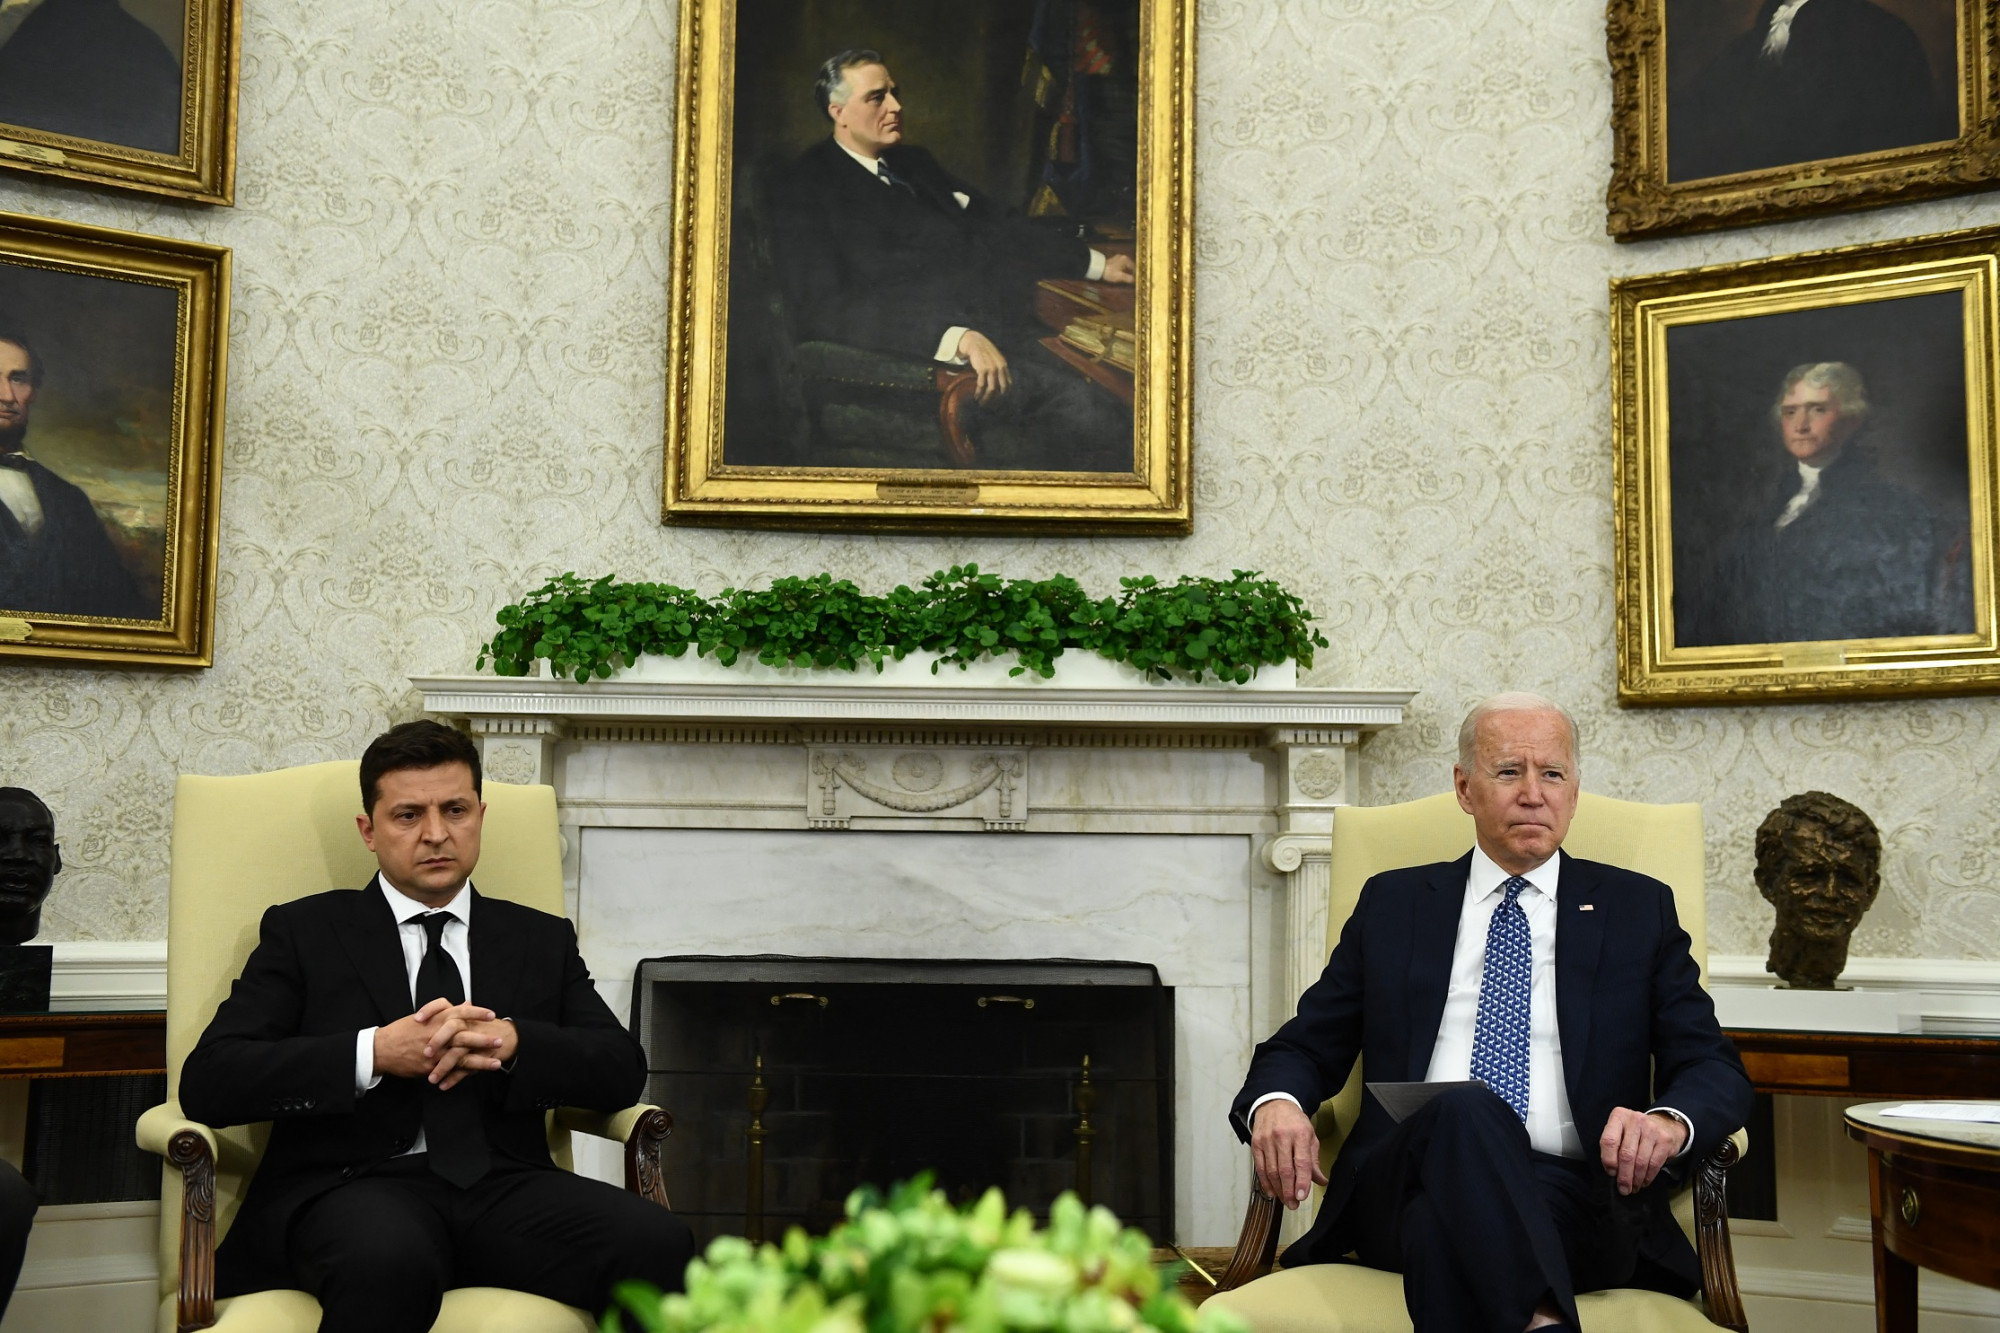 Az ukránok szerint tisztázni kellene, miről beszélt Joe Biden